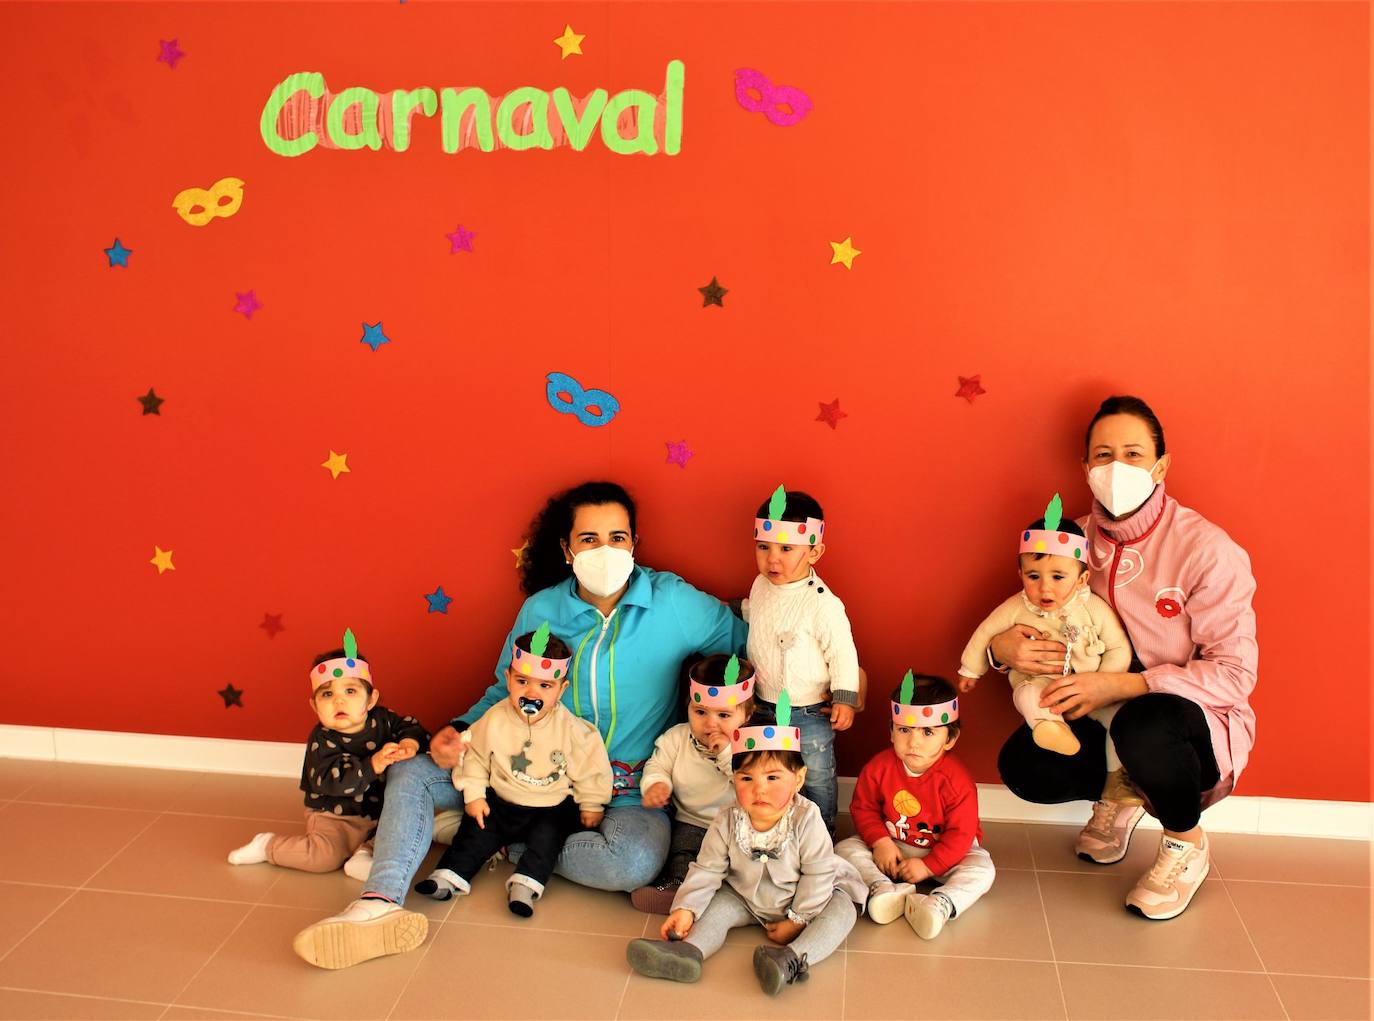 Fotos: El carnaval en los centros escolares